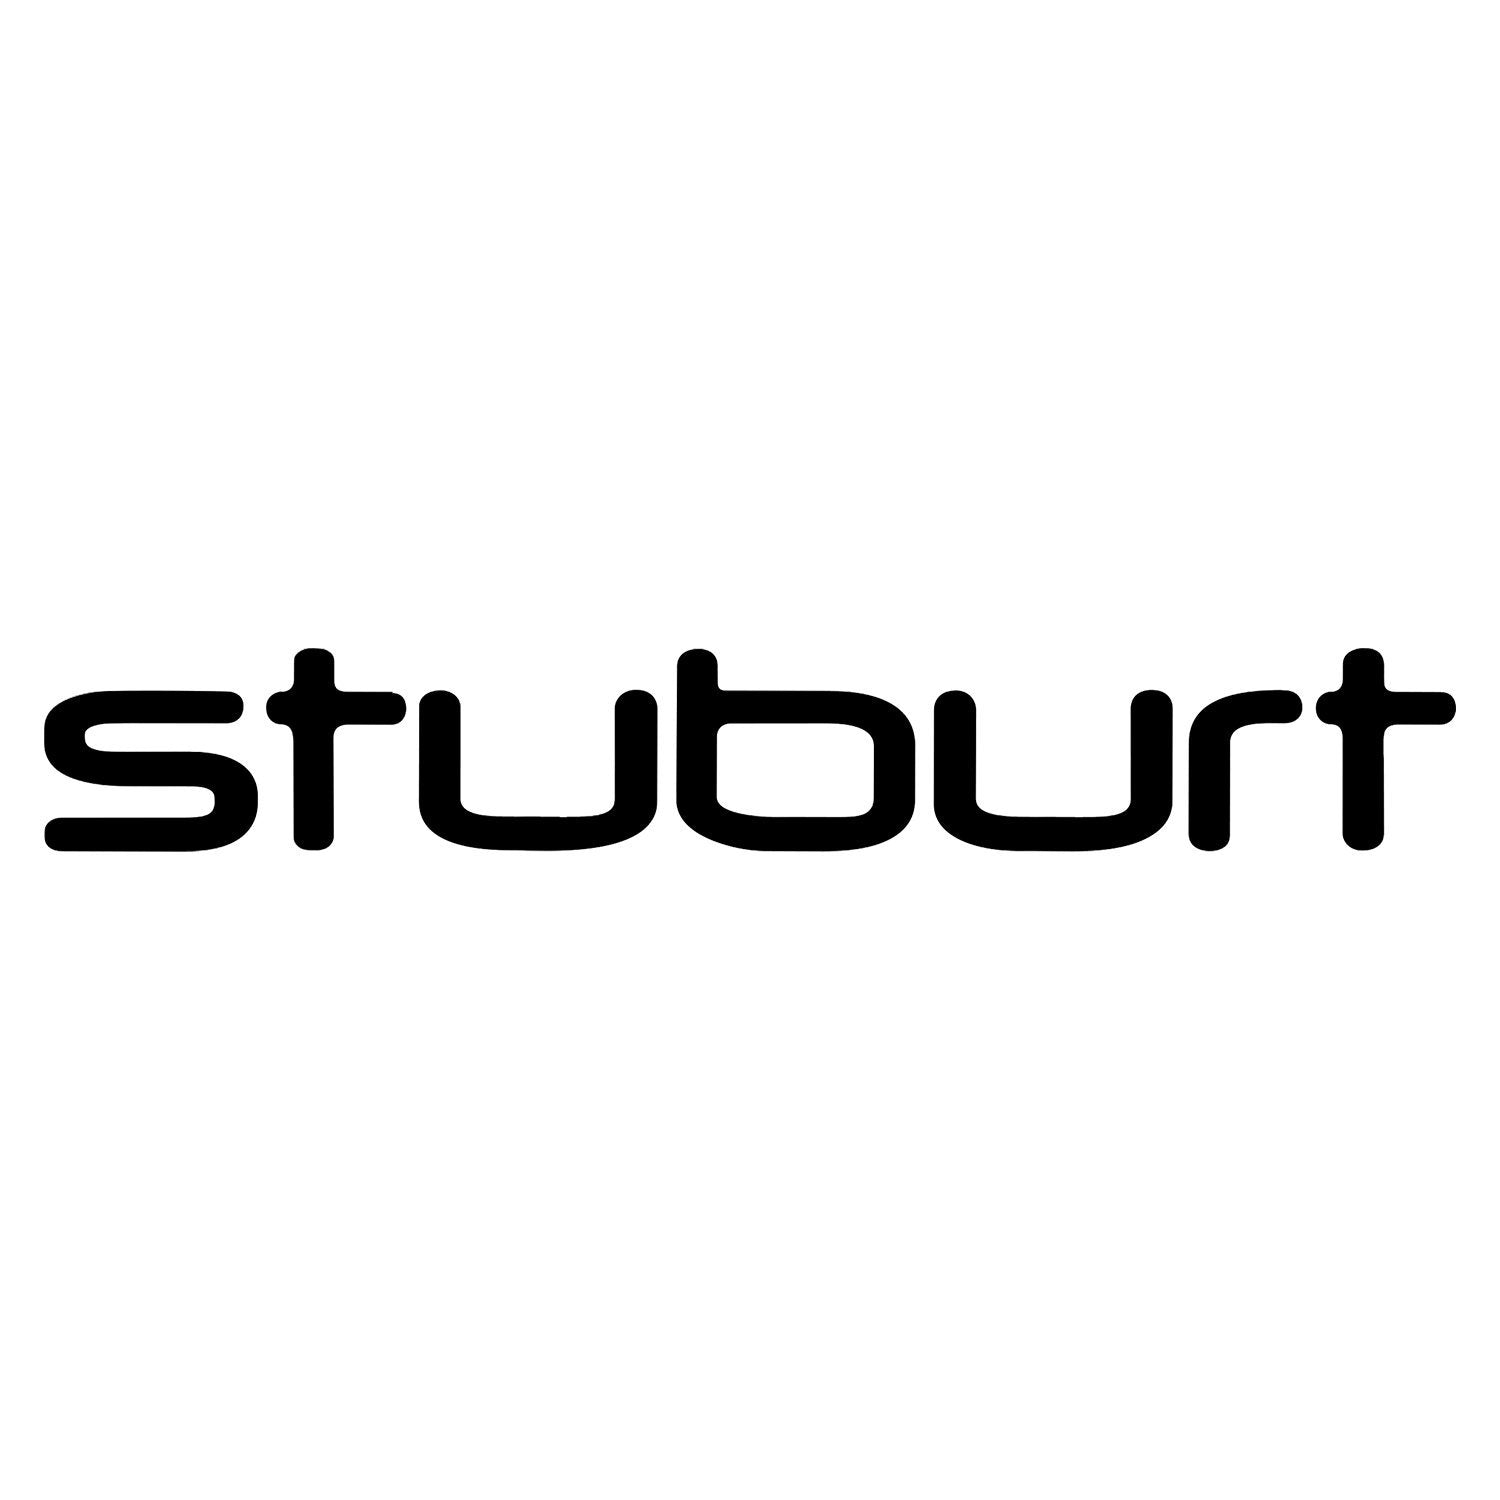 (c) Stuburt.com